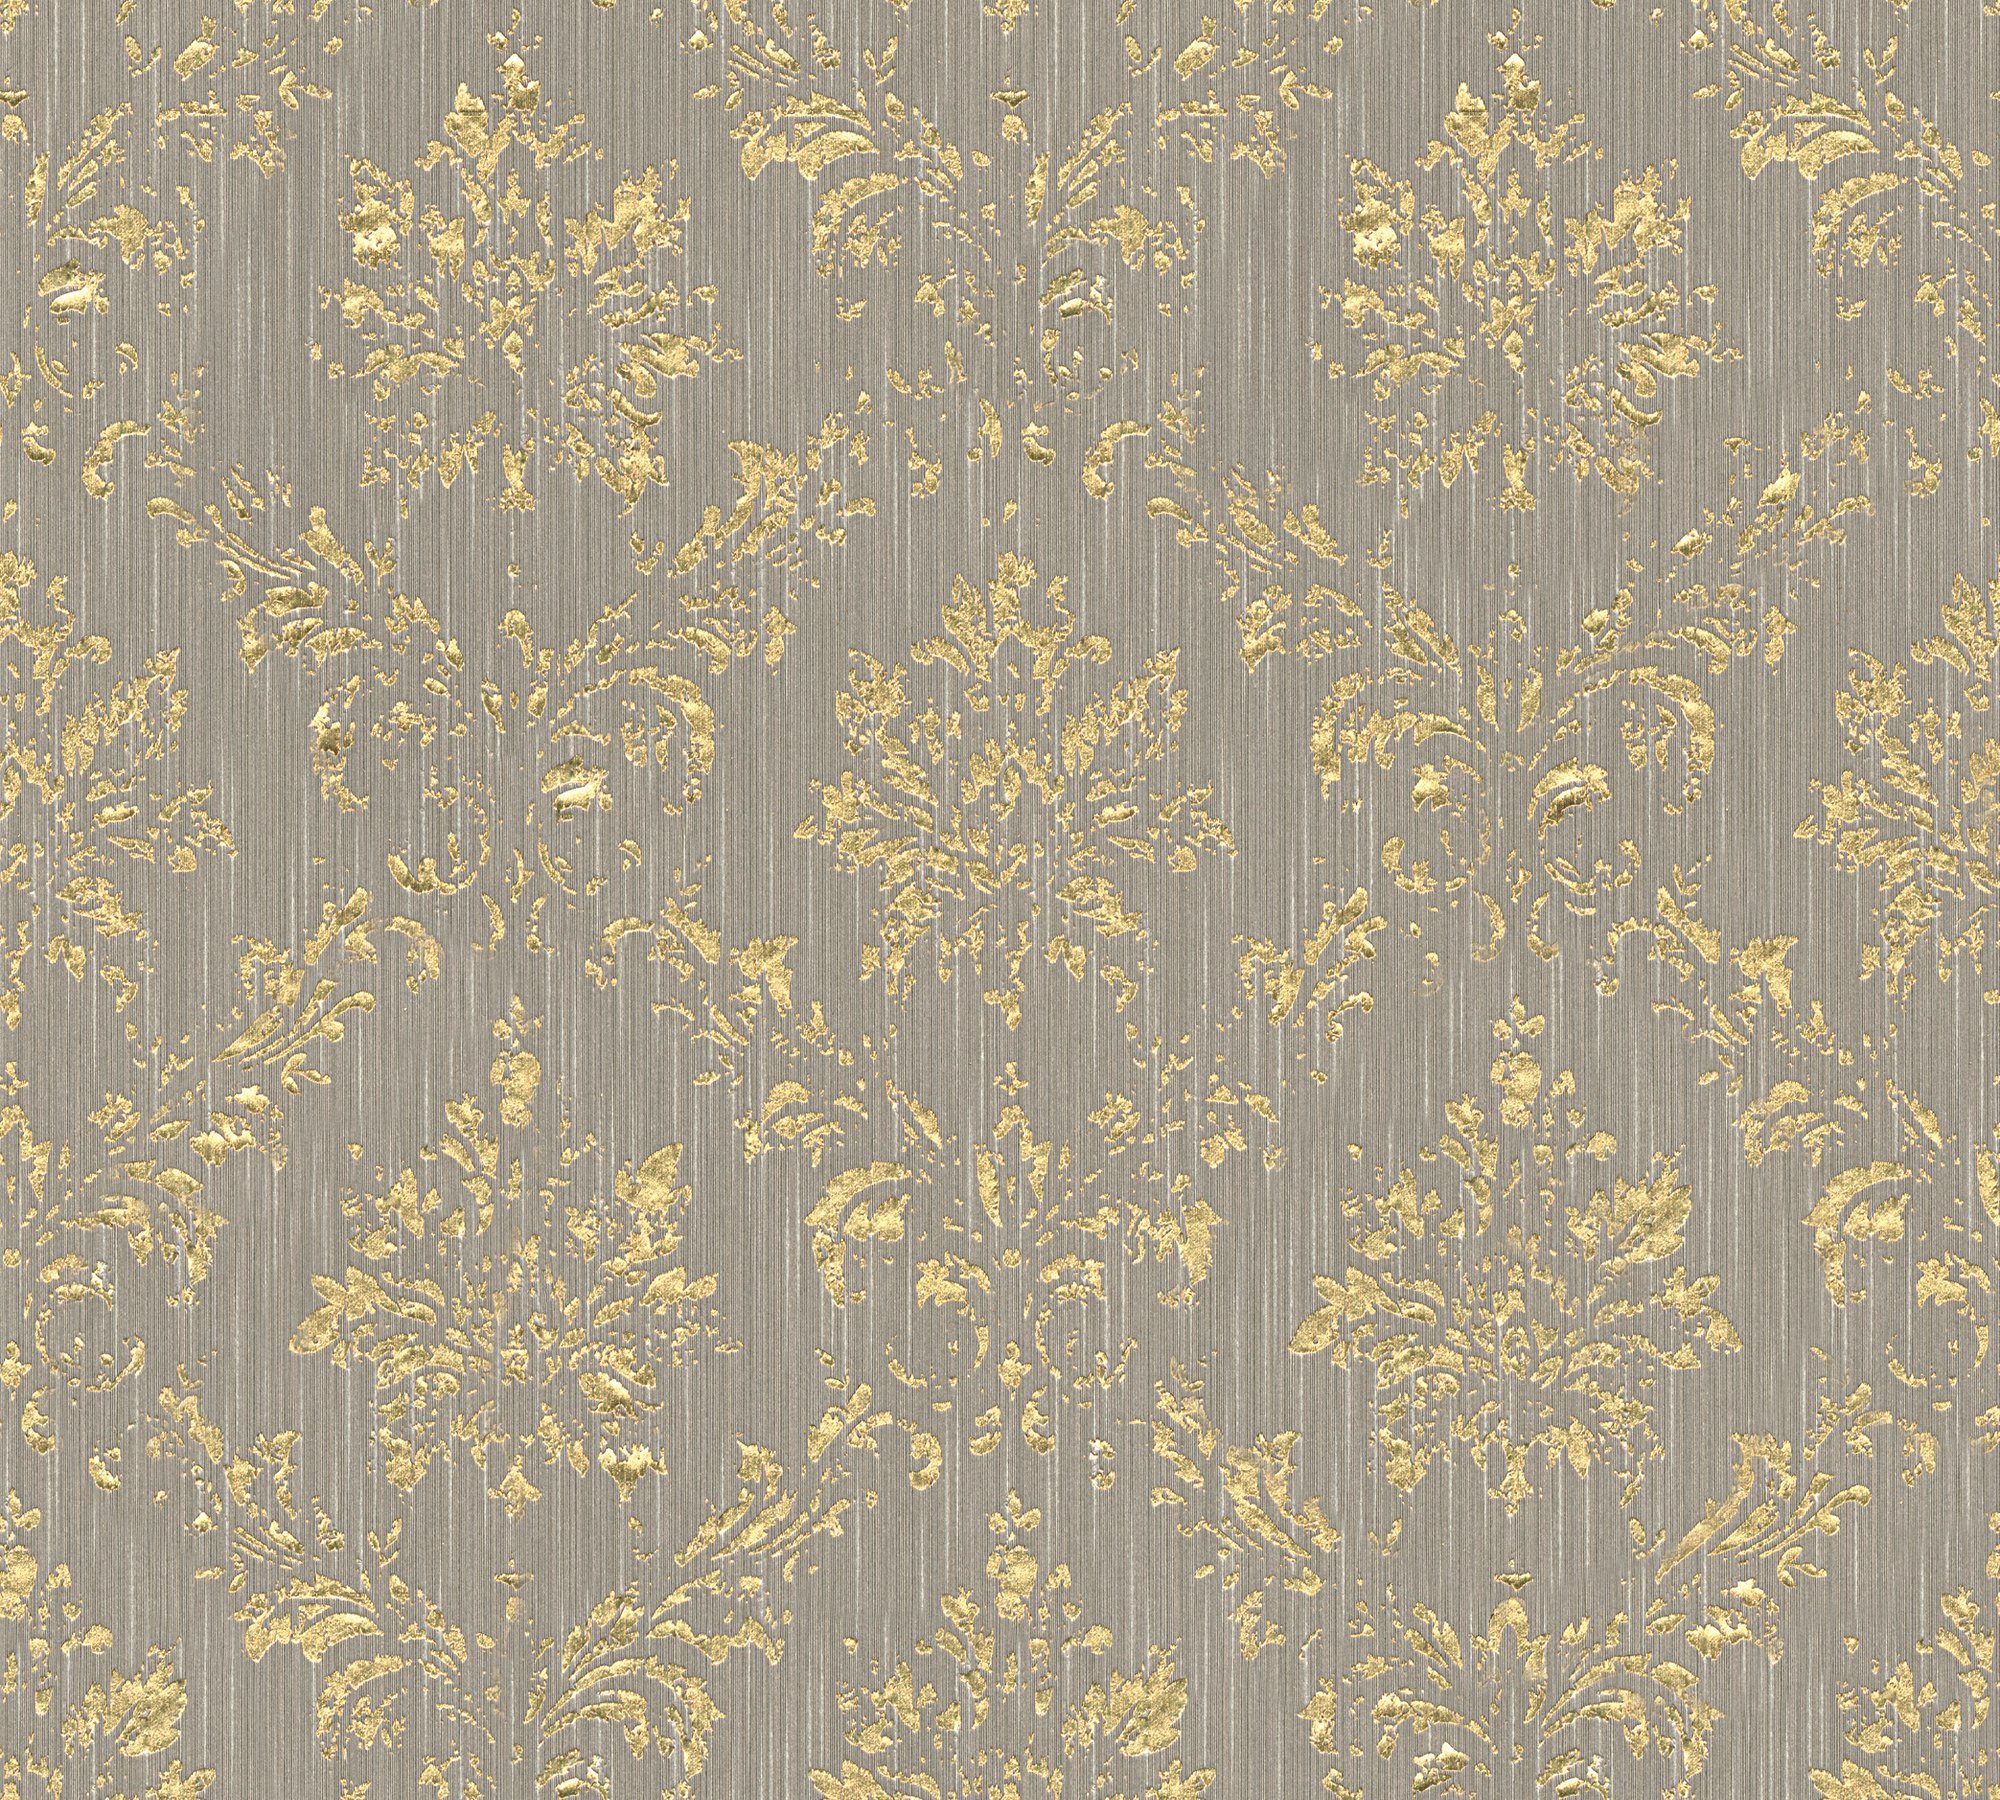 A.S. Création Barock, Silk, samtig, Paper Tapete matt, Ornament gold/beige Textiltapete Metallic glänzend, Architects Barock